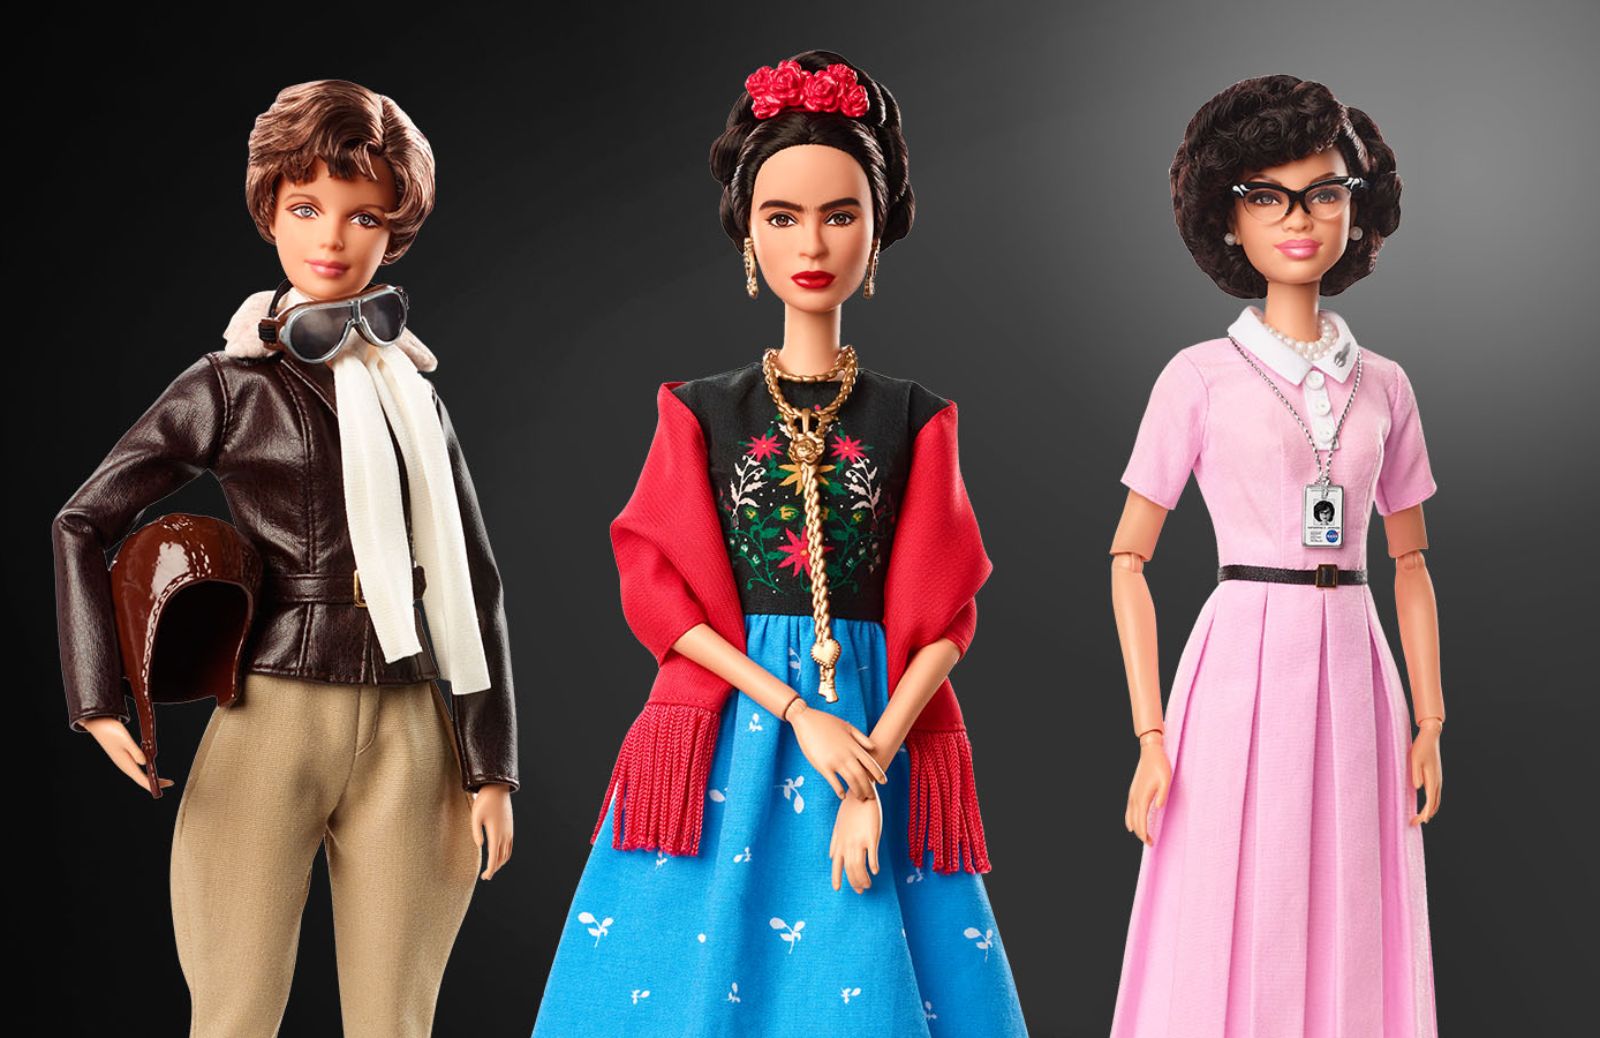 La nuova missione di Barbie: trasformare i sogni delle bambine in realtà